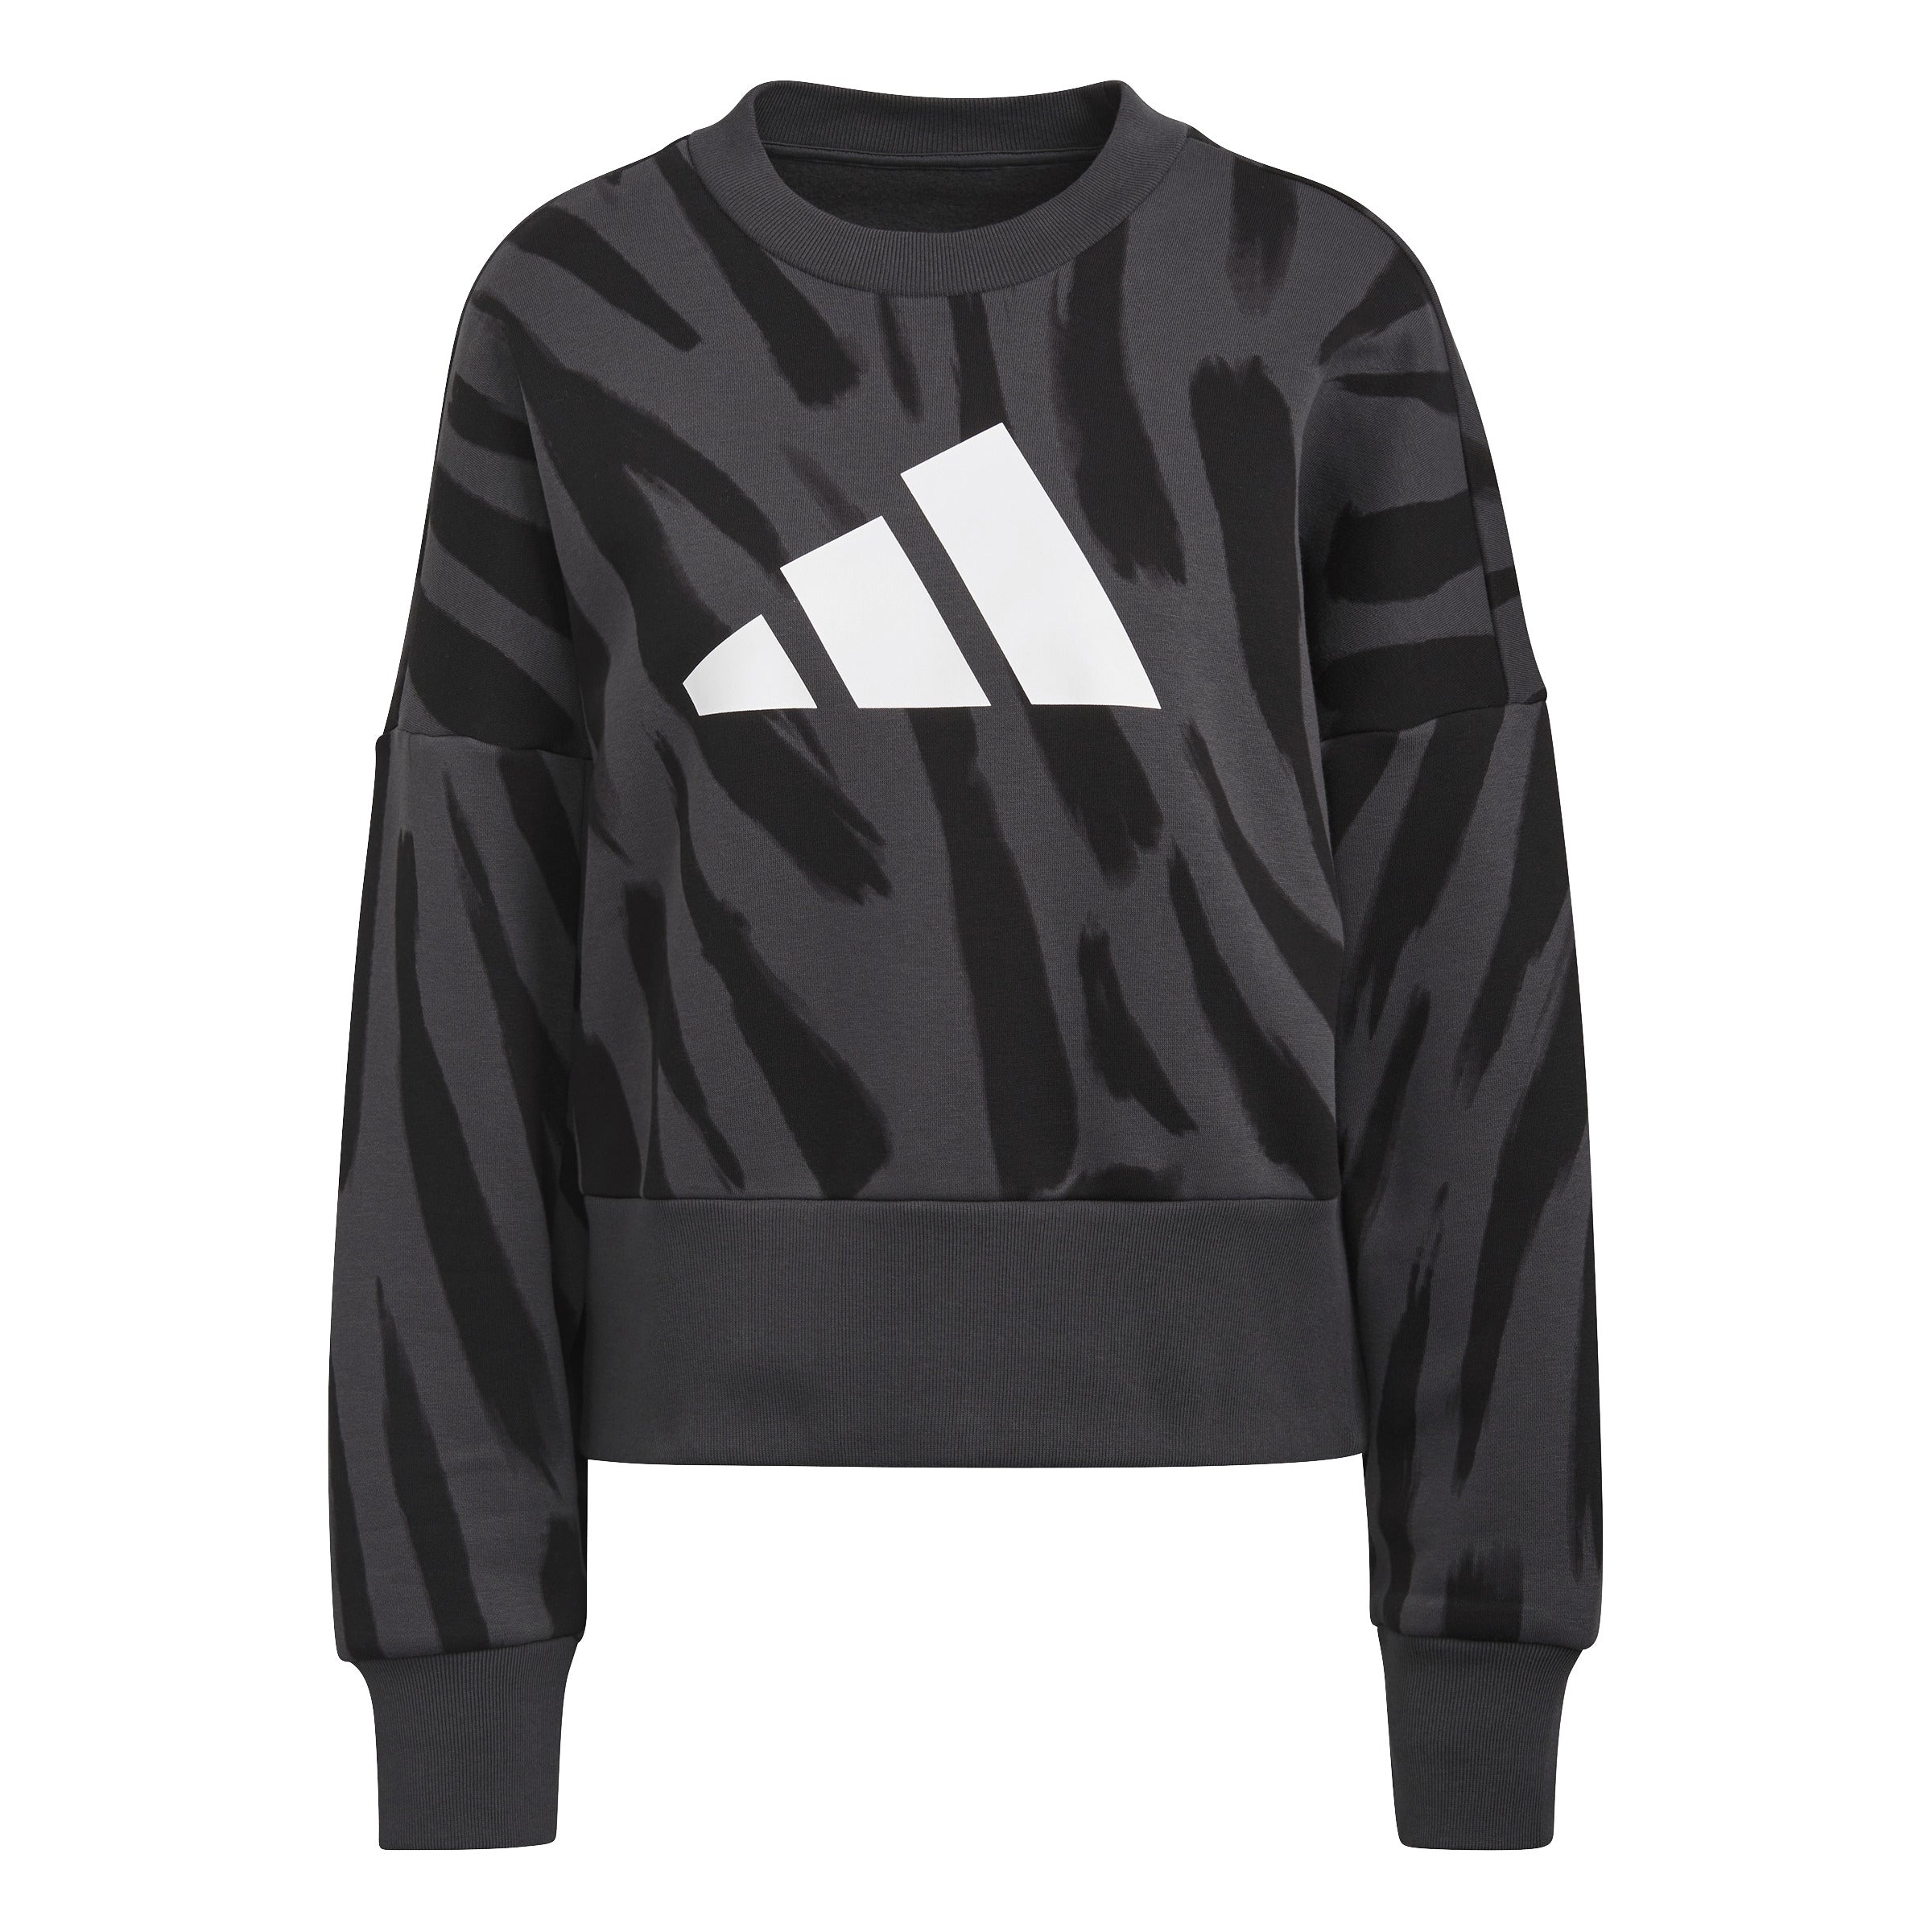 Sportswear Future Icons Feel Fierce Graphic Sweatshirt